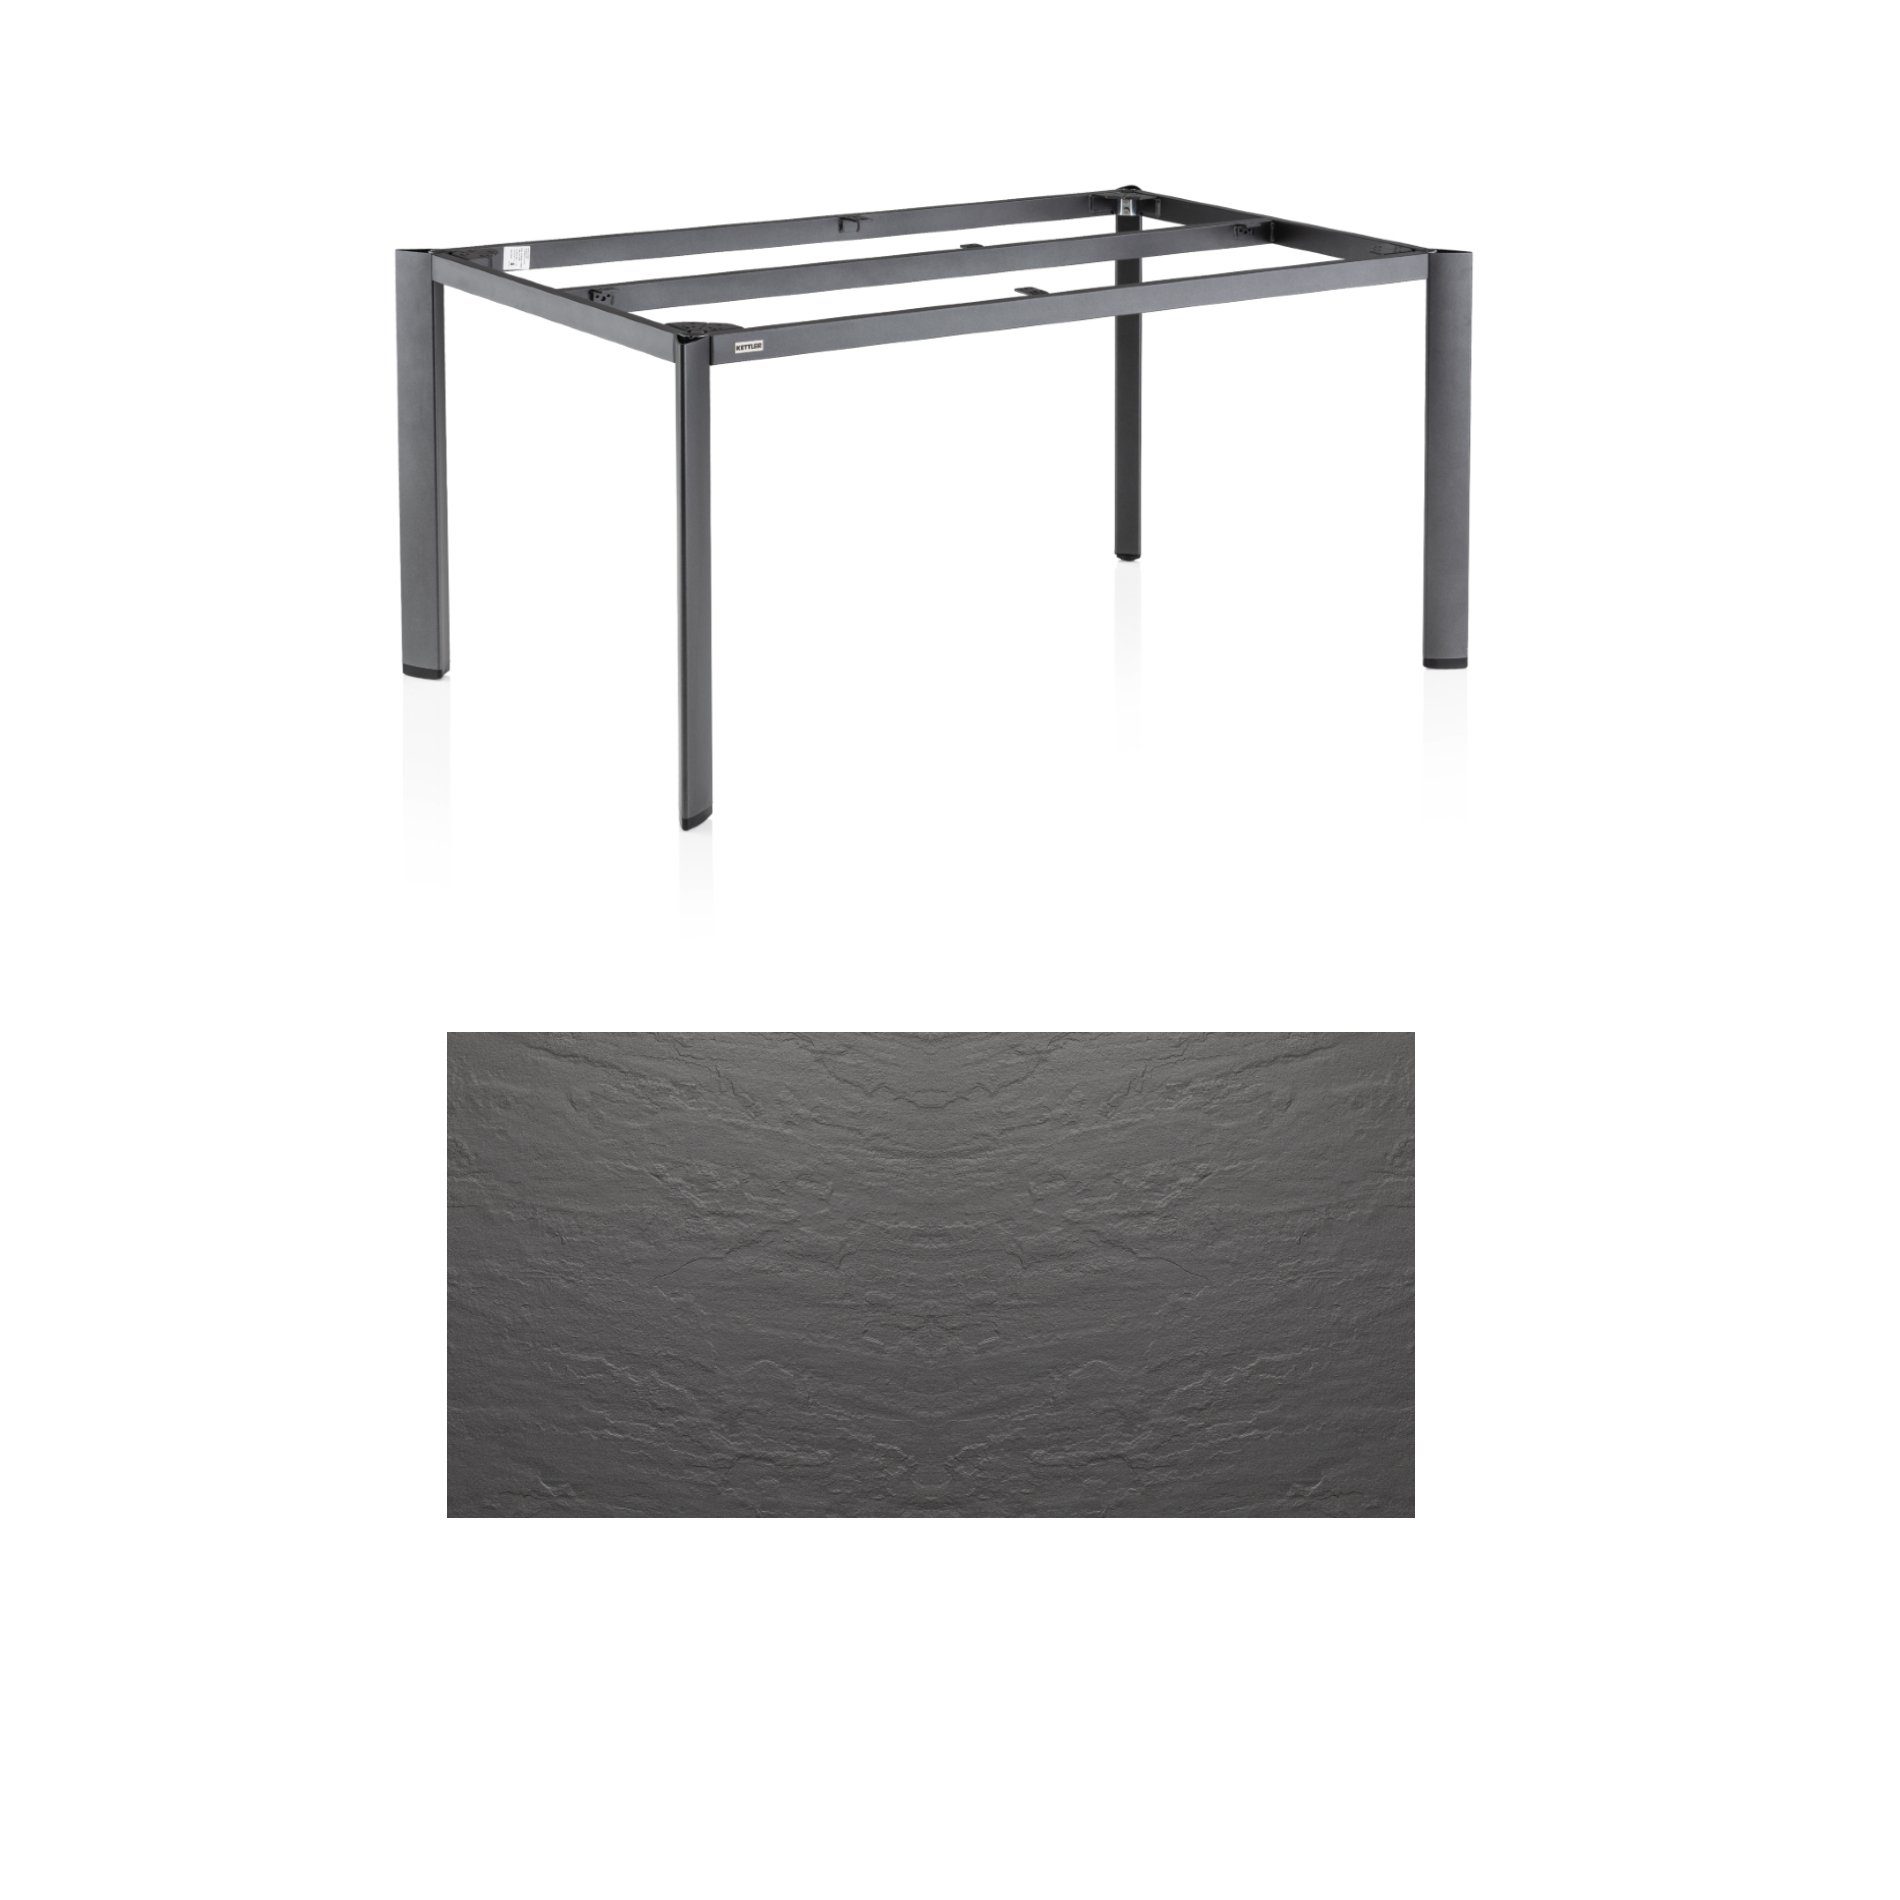 Kettler "Edge" Gartentisch, Tischgestell 160x95cm, Aluminium anthrazit, mit Tischplatte Kettalux anthrazit